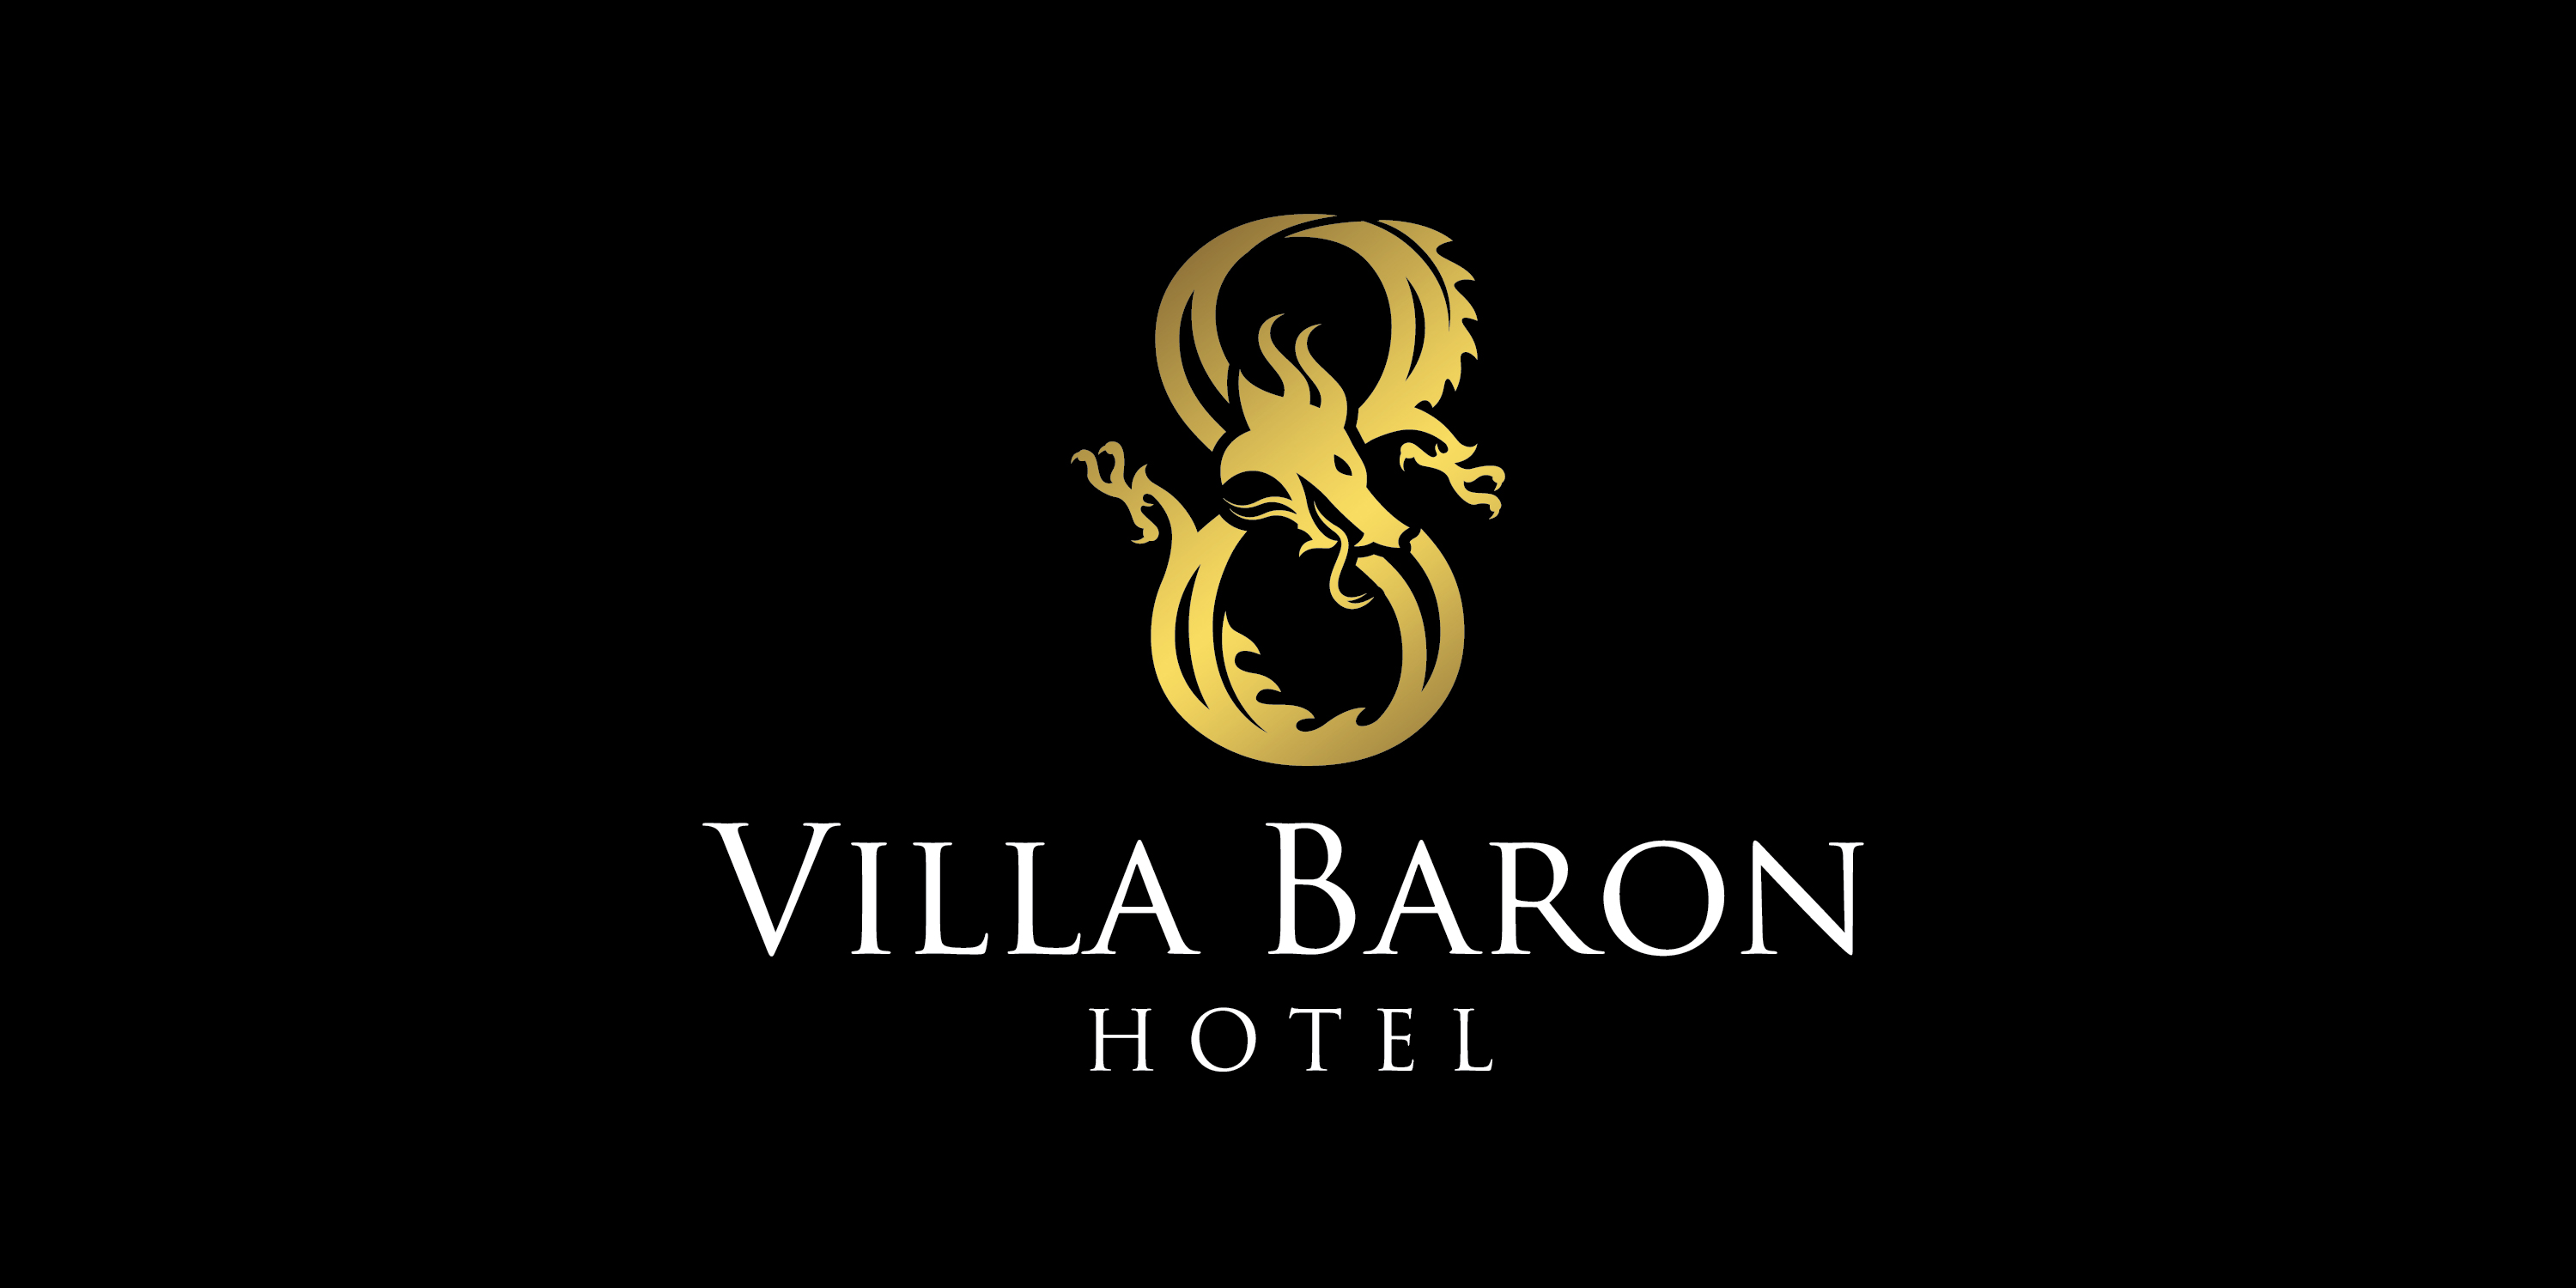 โรงแรมวิลล่า บารอน (Villa Baron Hotel) logo โลโก้